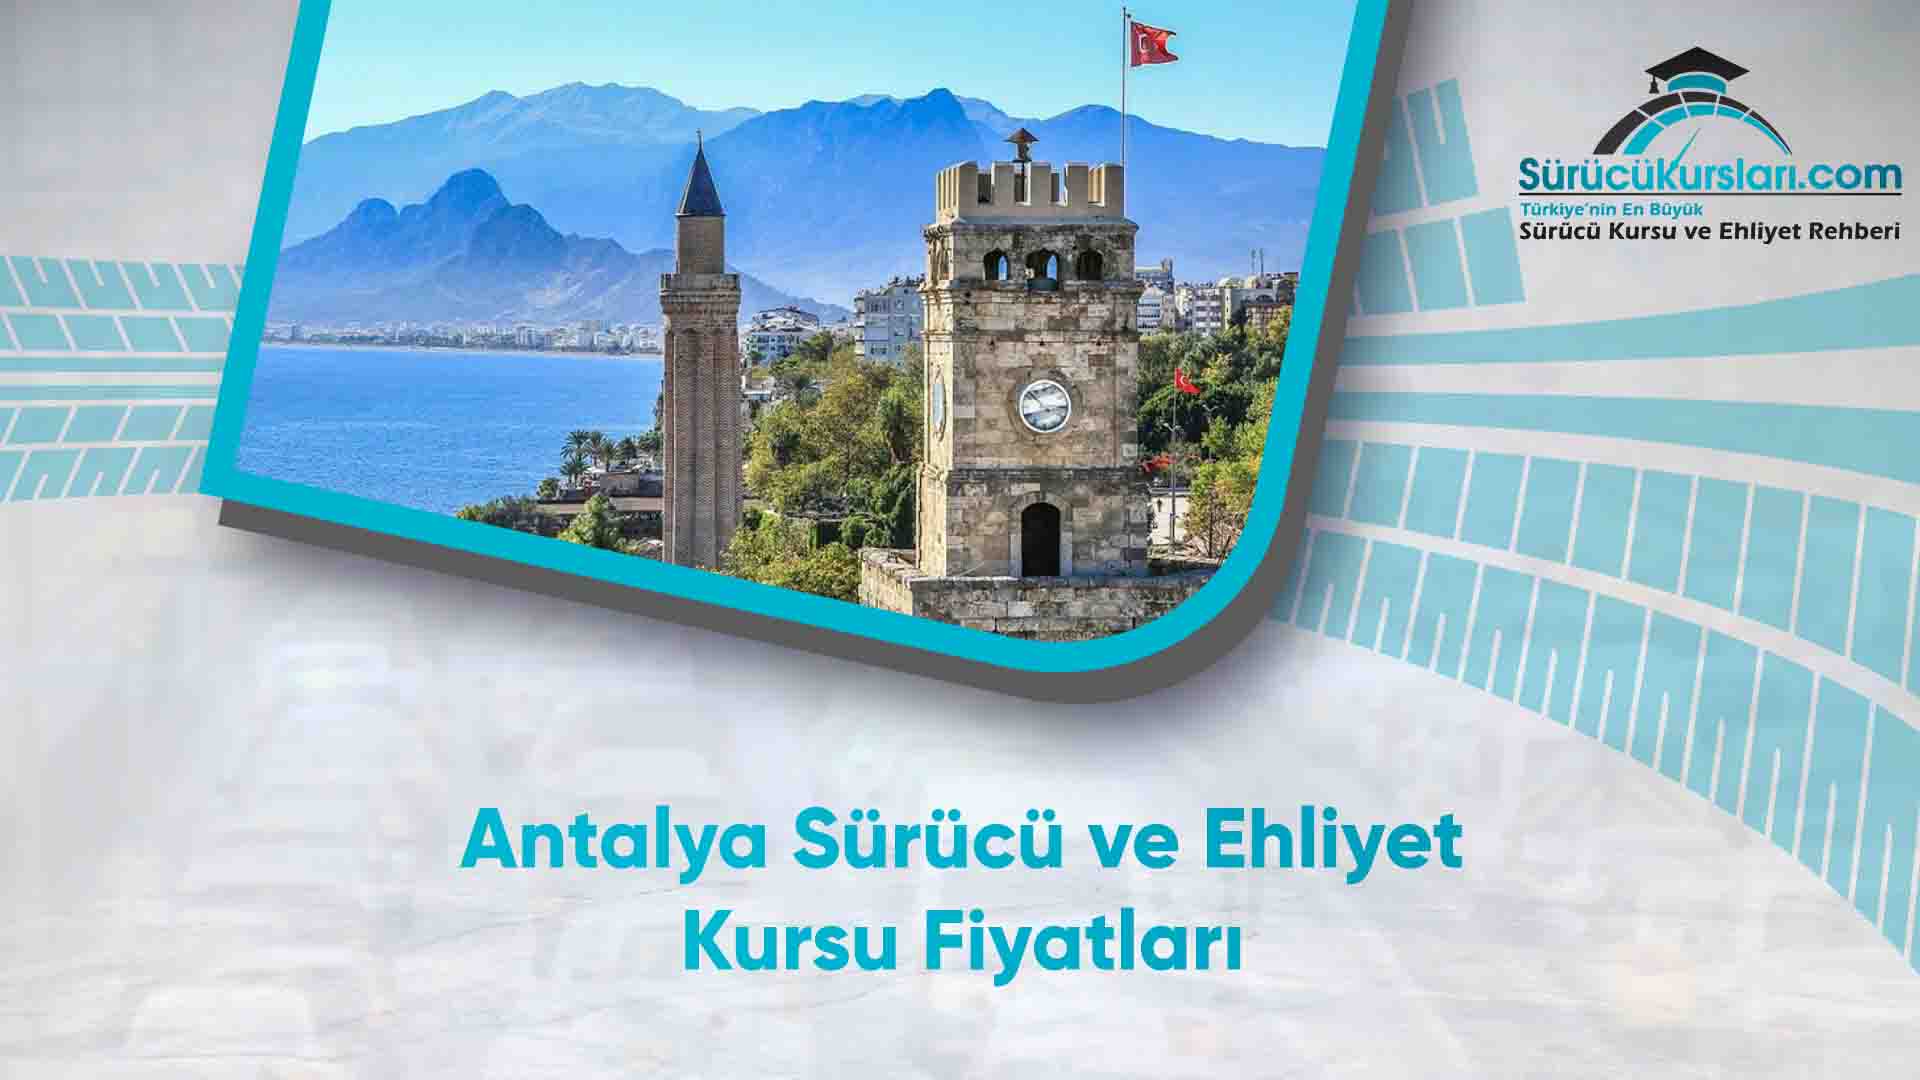 Antalya Sürücü ve Ehliyet Kursu Fiyatları